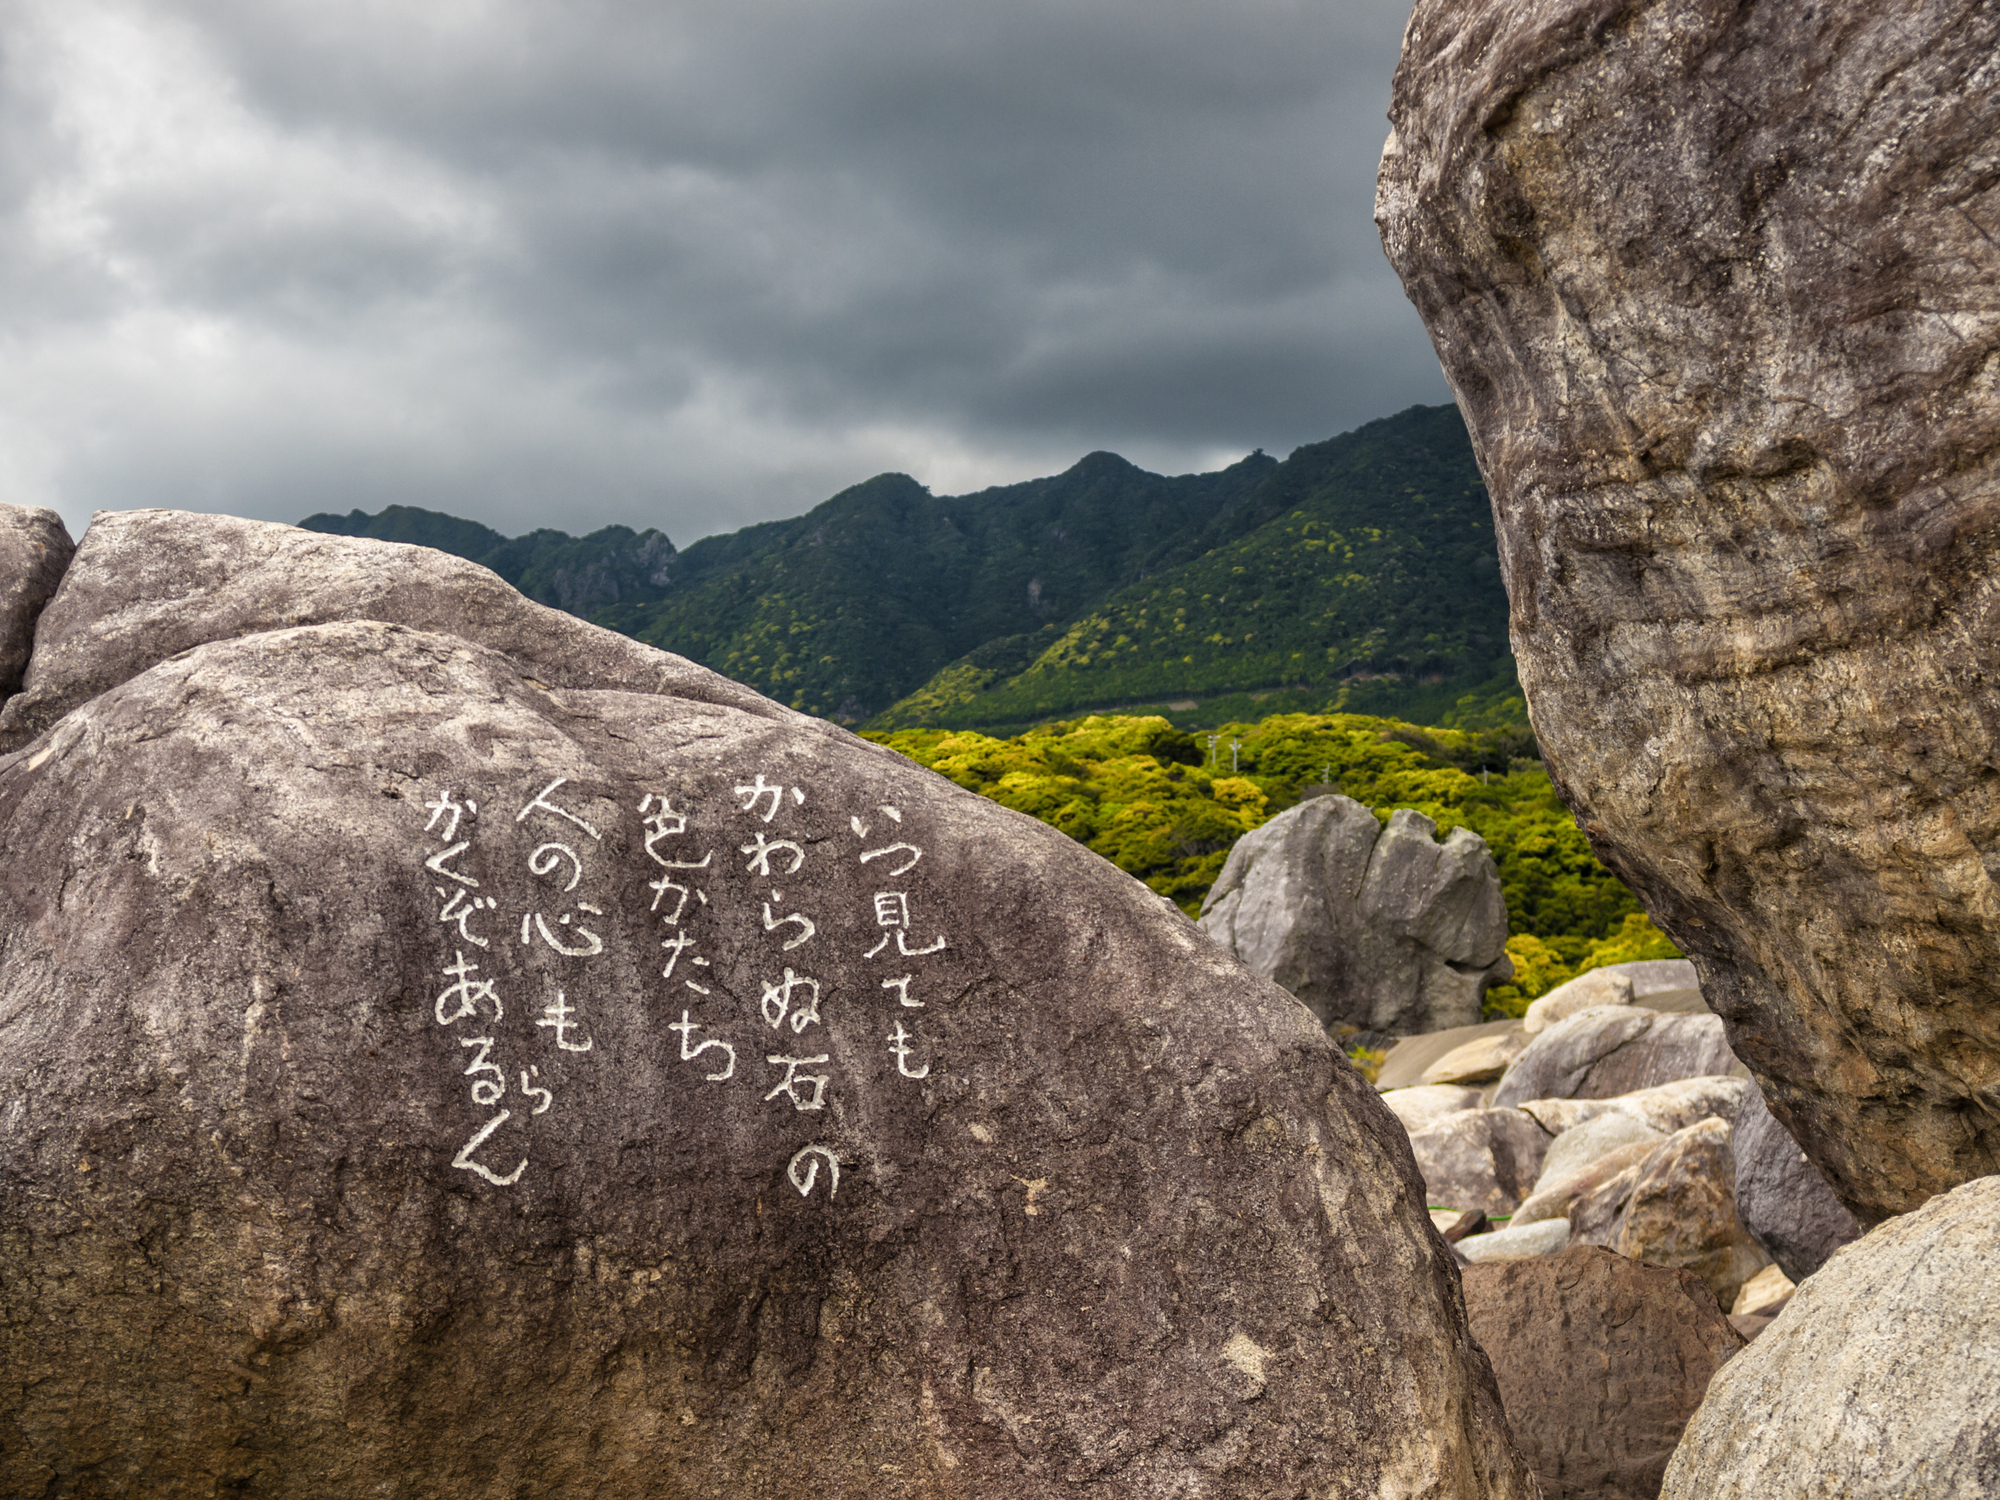 הייקו שנכתב על סלע ליד מעיינות חמים על ידי נזירים מקומיים